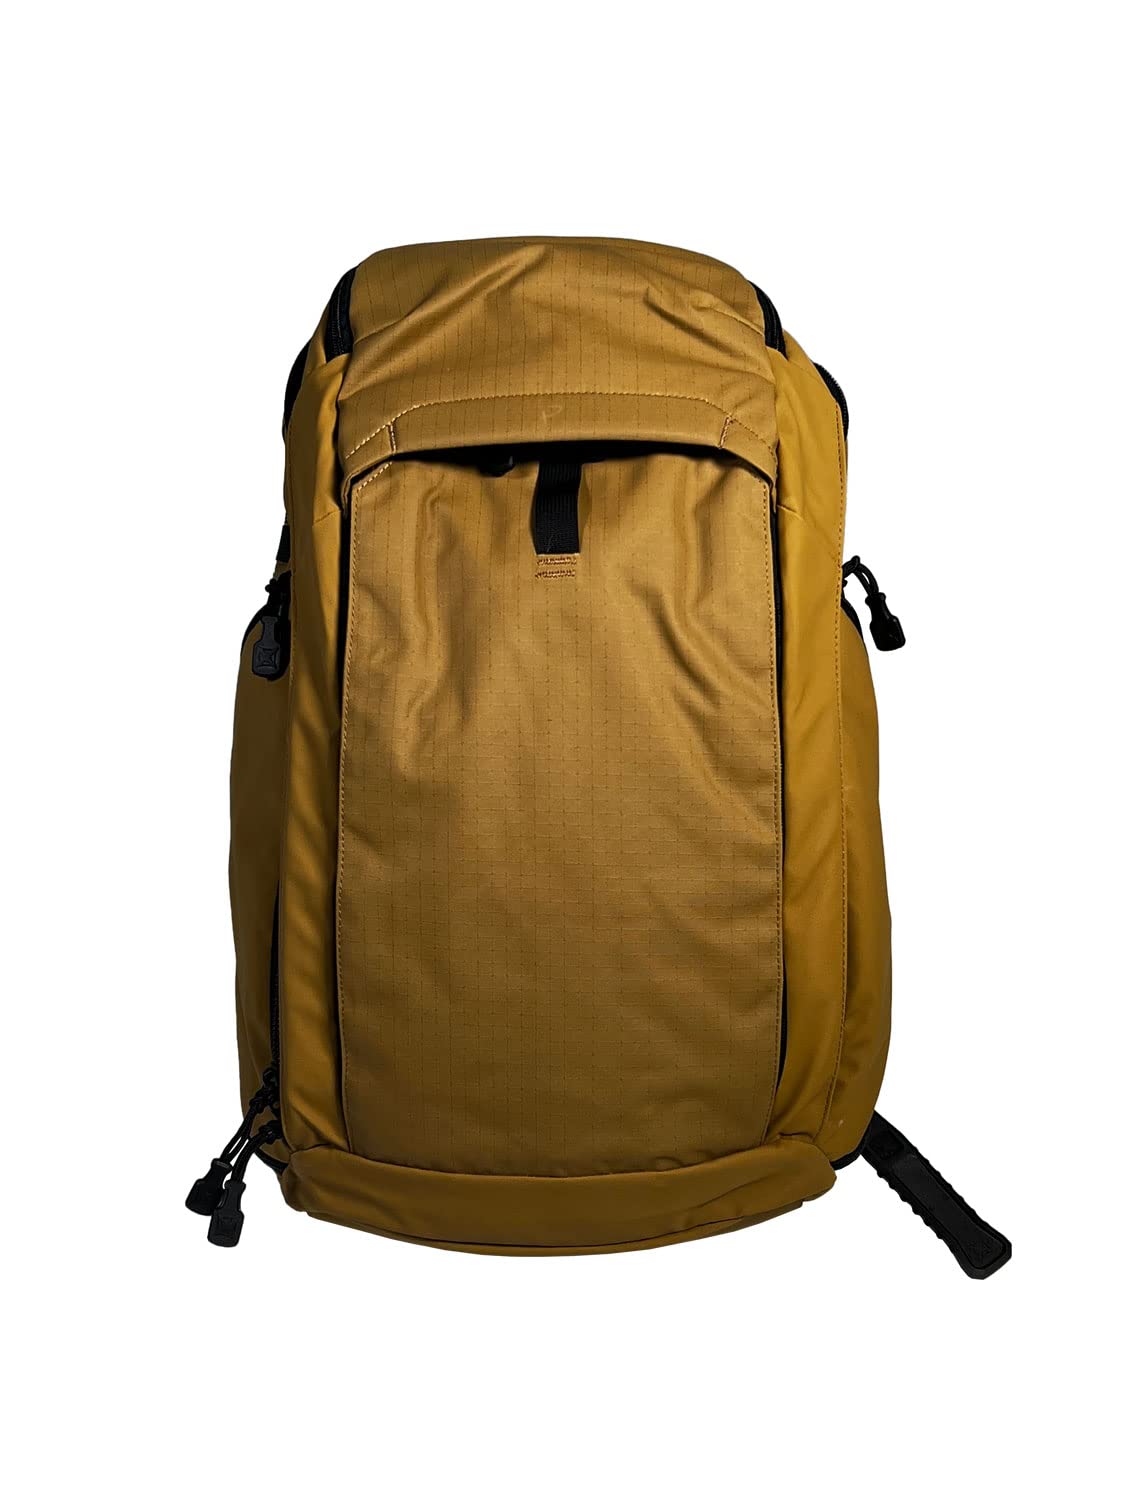 送料無料Vertx Gamut Tactical Backpack 25L Conceal Carry Bag for Travel Work Hiking Camping Overlanding Tactical Gear